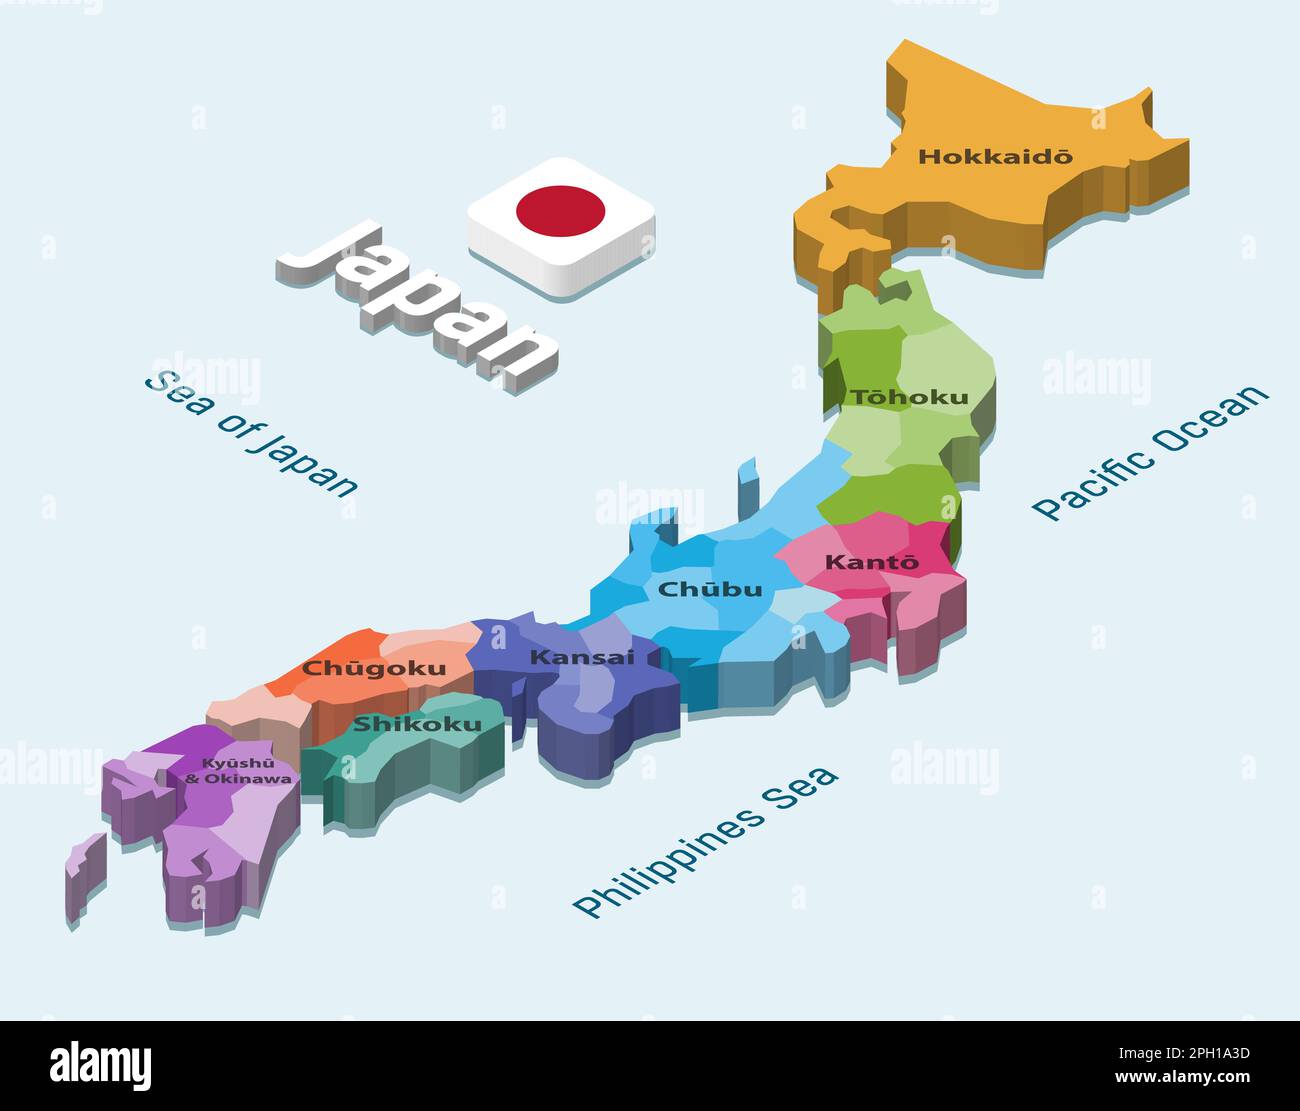 Japon 3D (isométrique) carte colorée par régions sur fond bleu clair Illustration de Vecteur